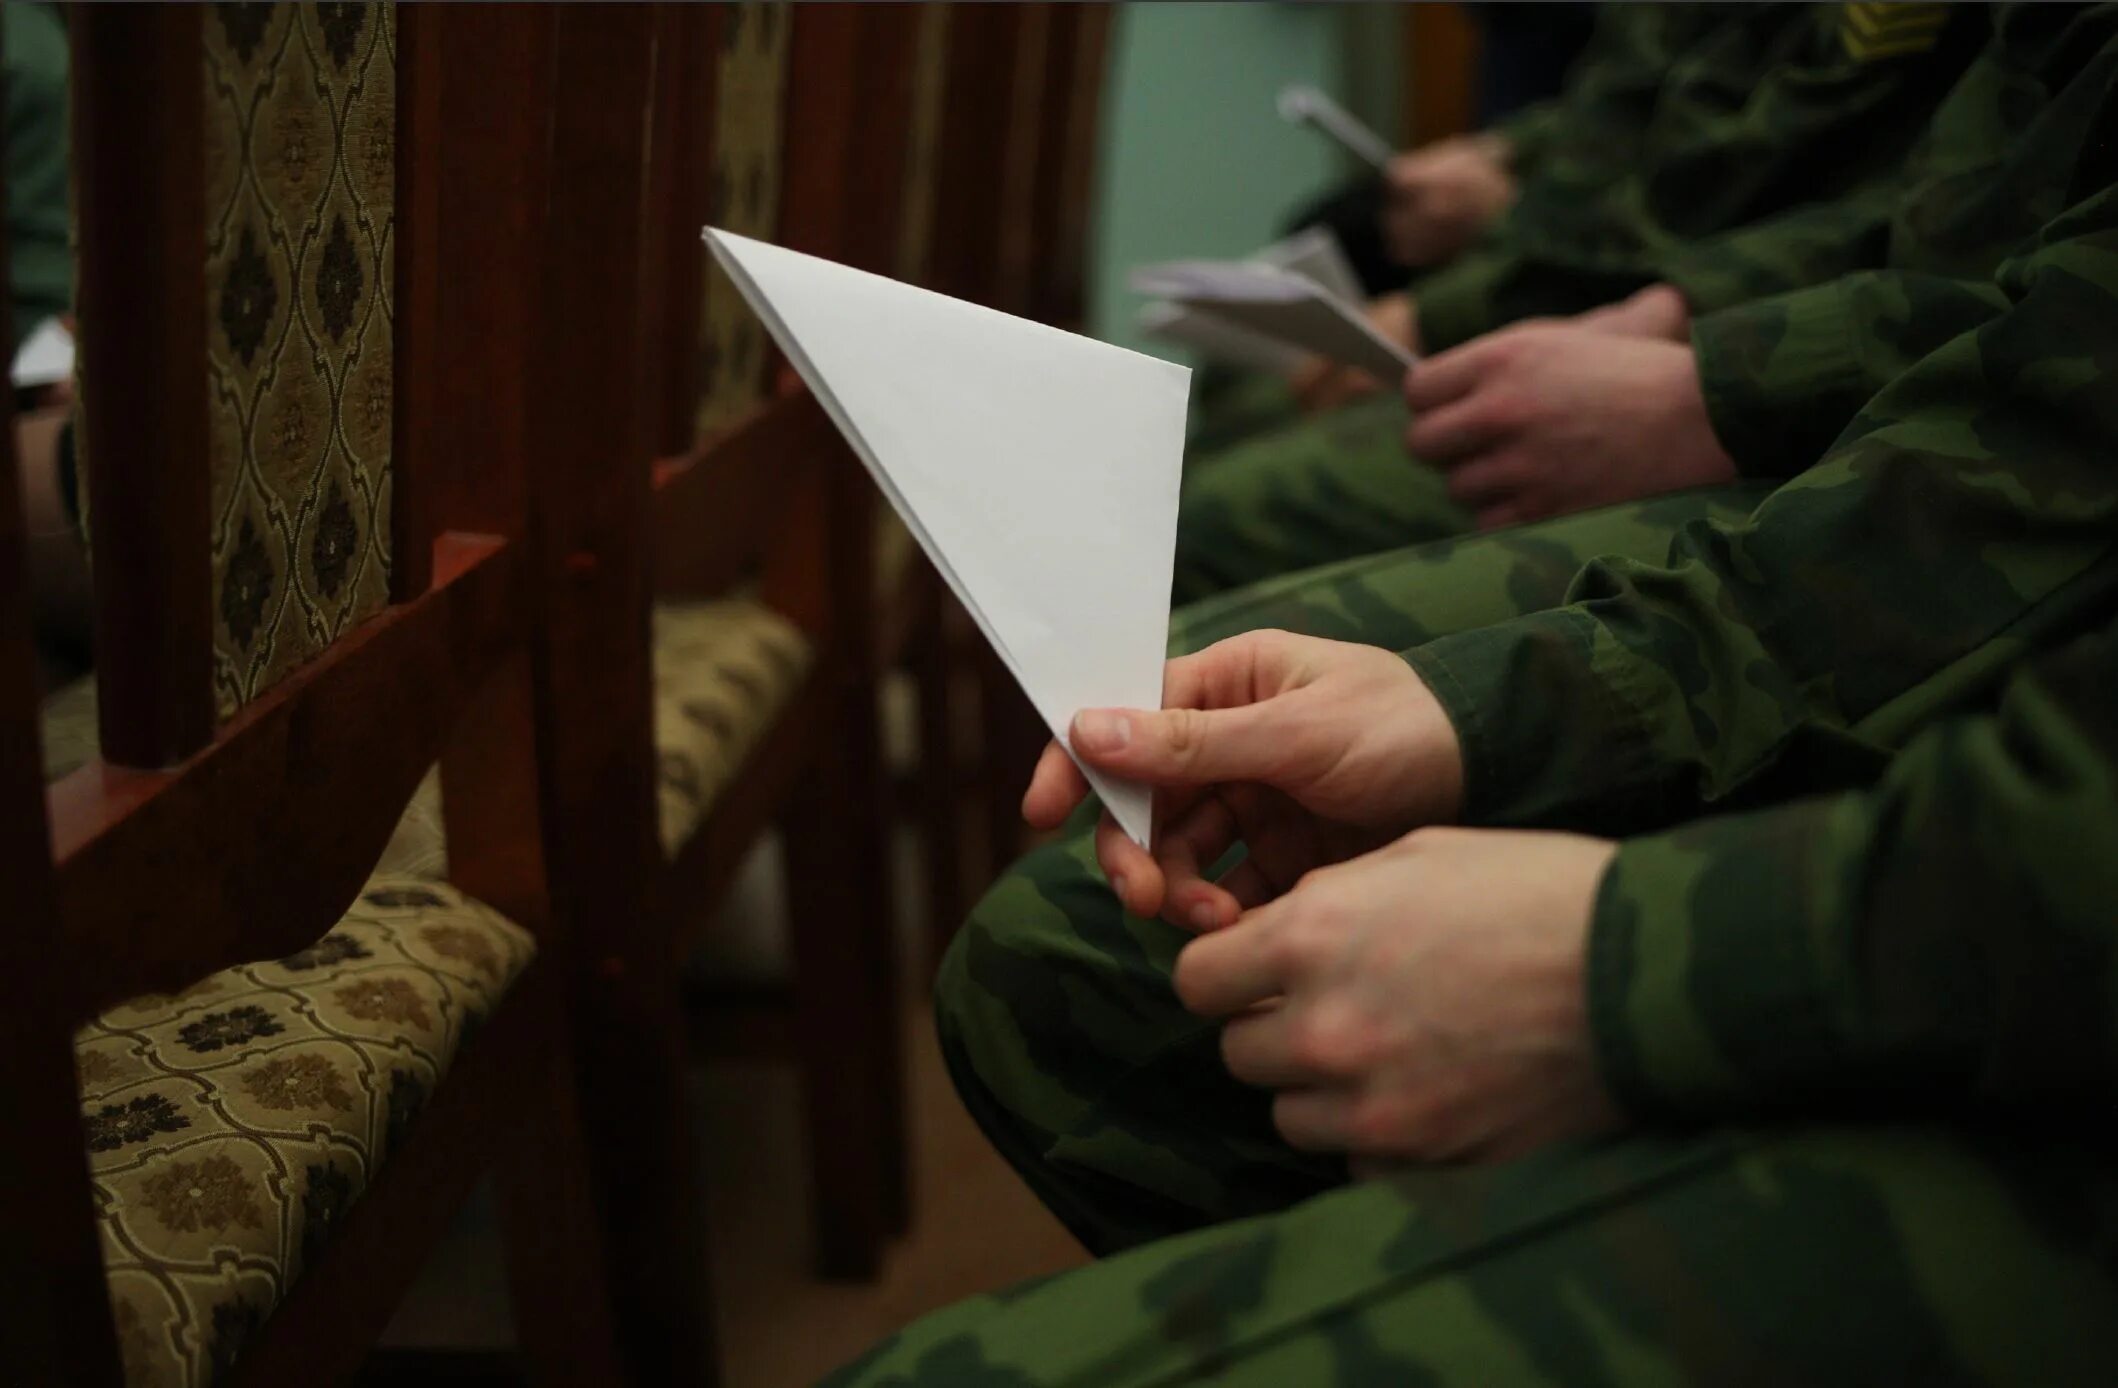 Читать курсант 1. Солдат читает письмо. Солдат России читает письмо. Военнослужащий читает письмо. Российский солдат читает письмо.